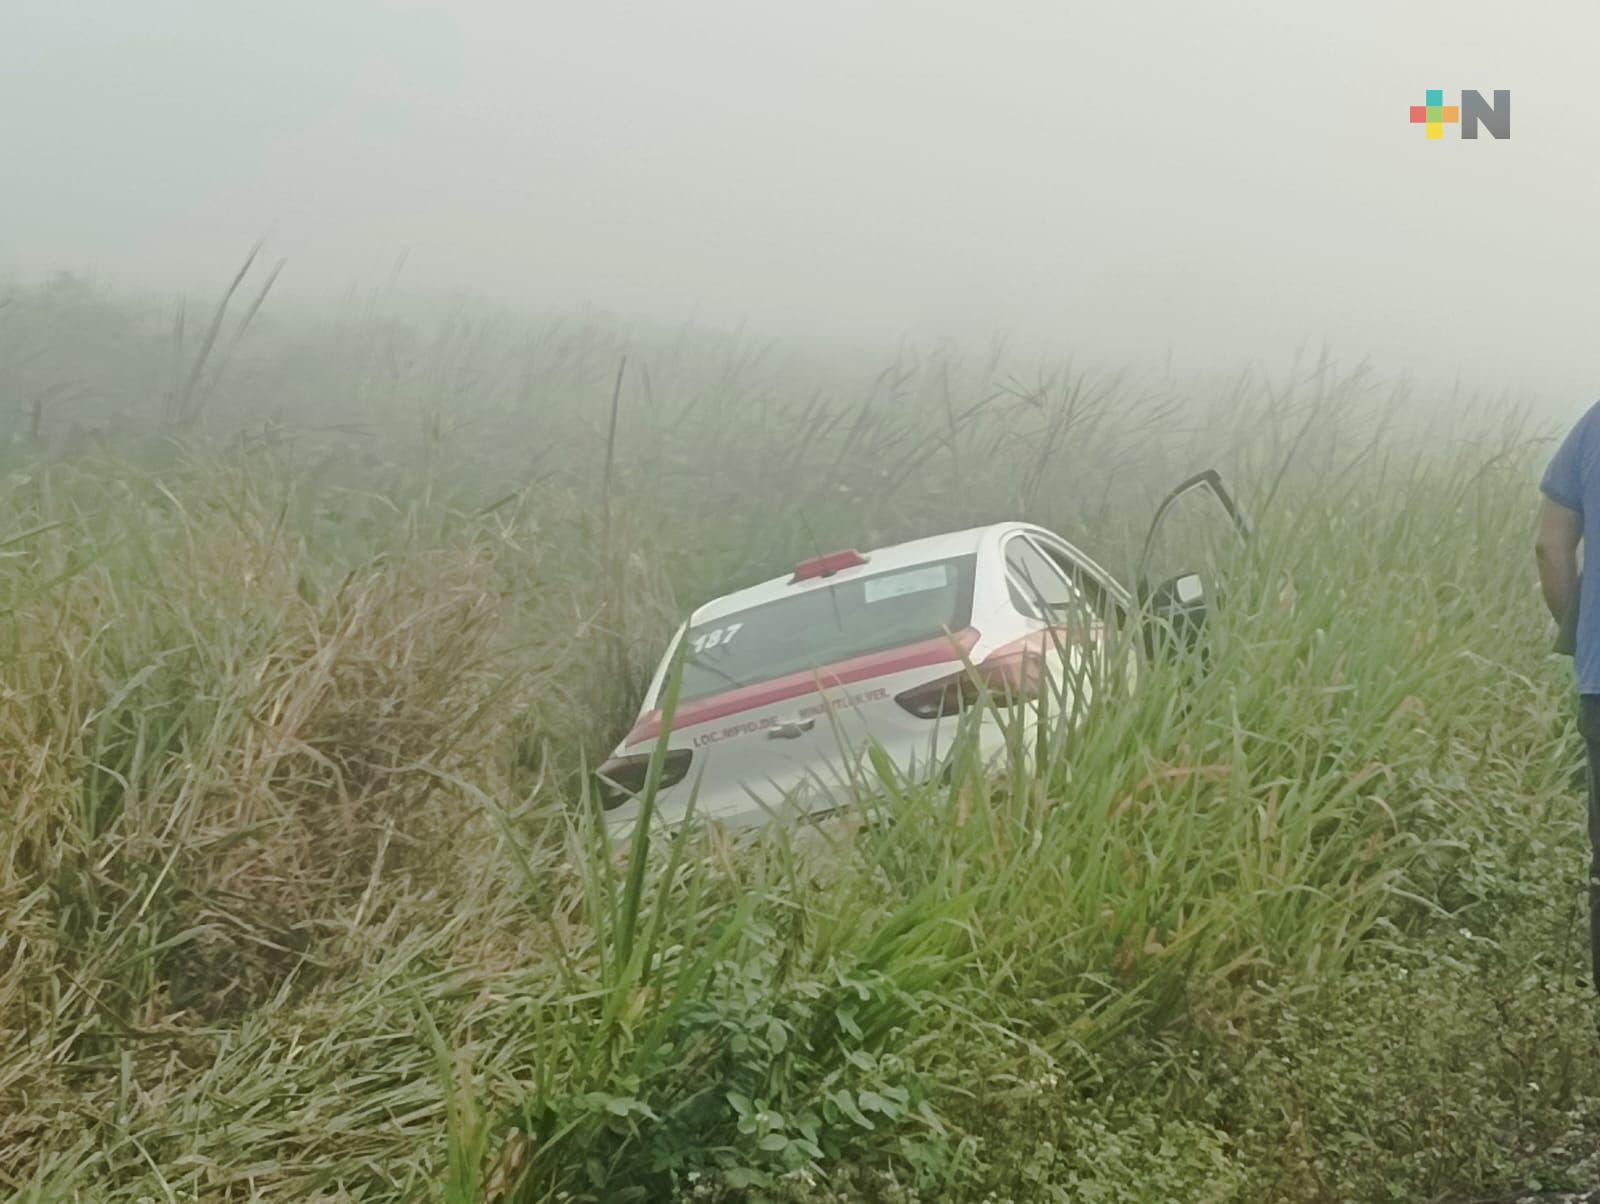 Neblina provoca que vehículos terminaran volcados en pantano